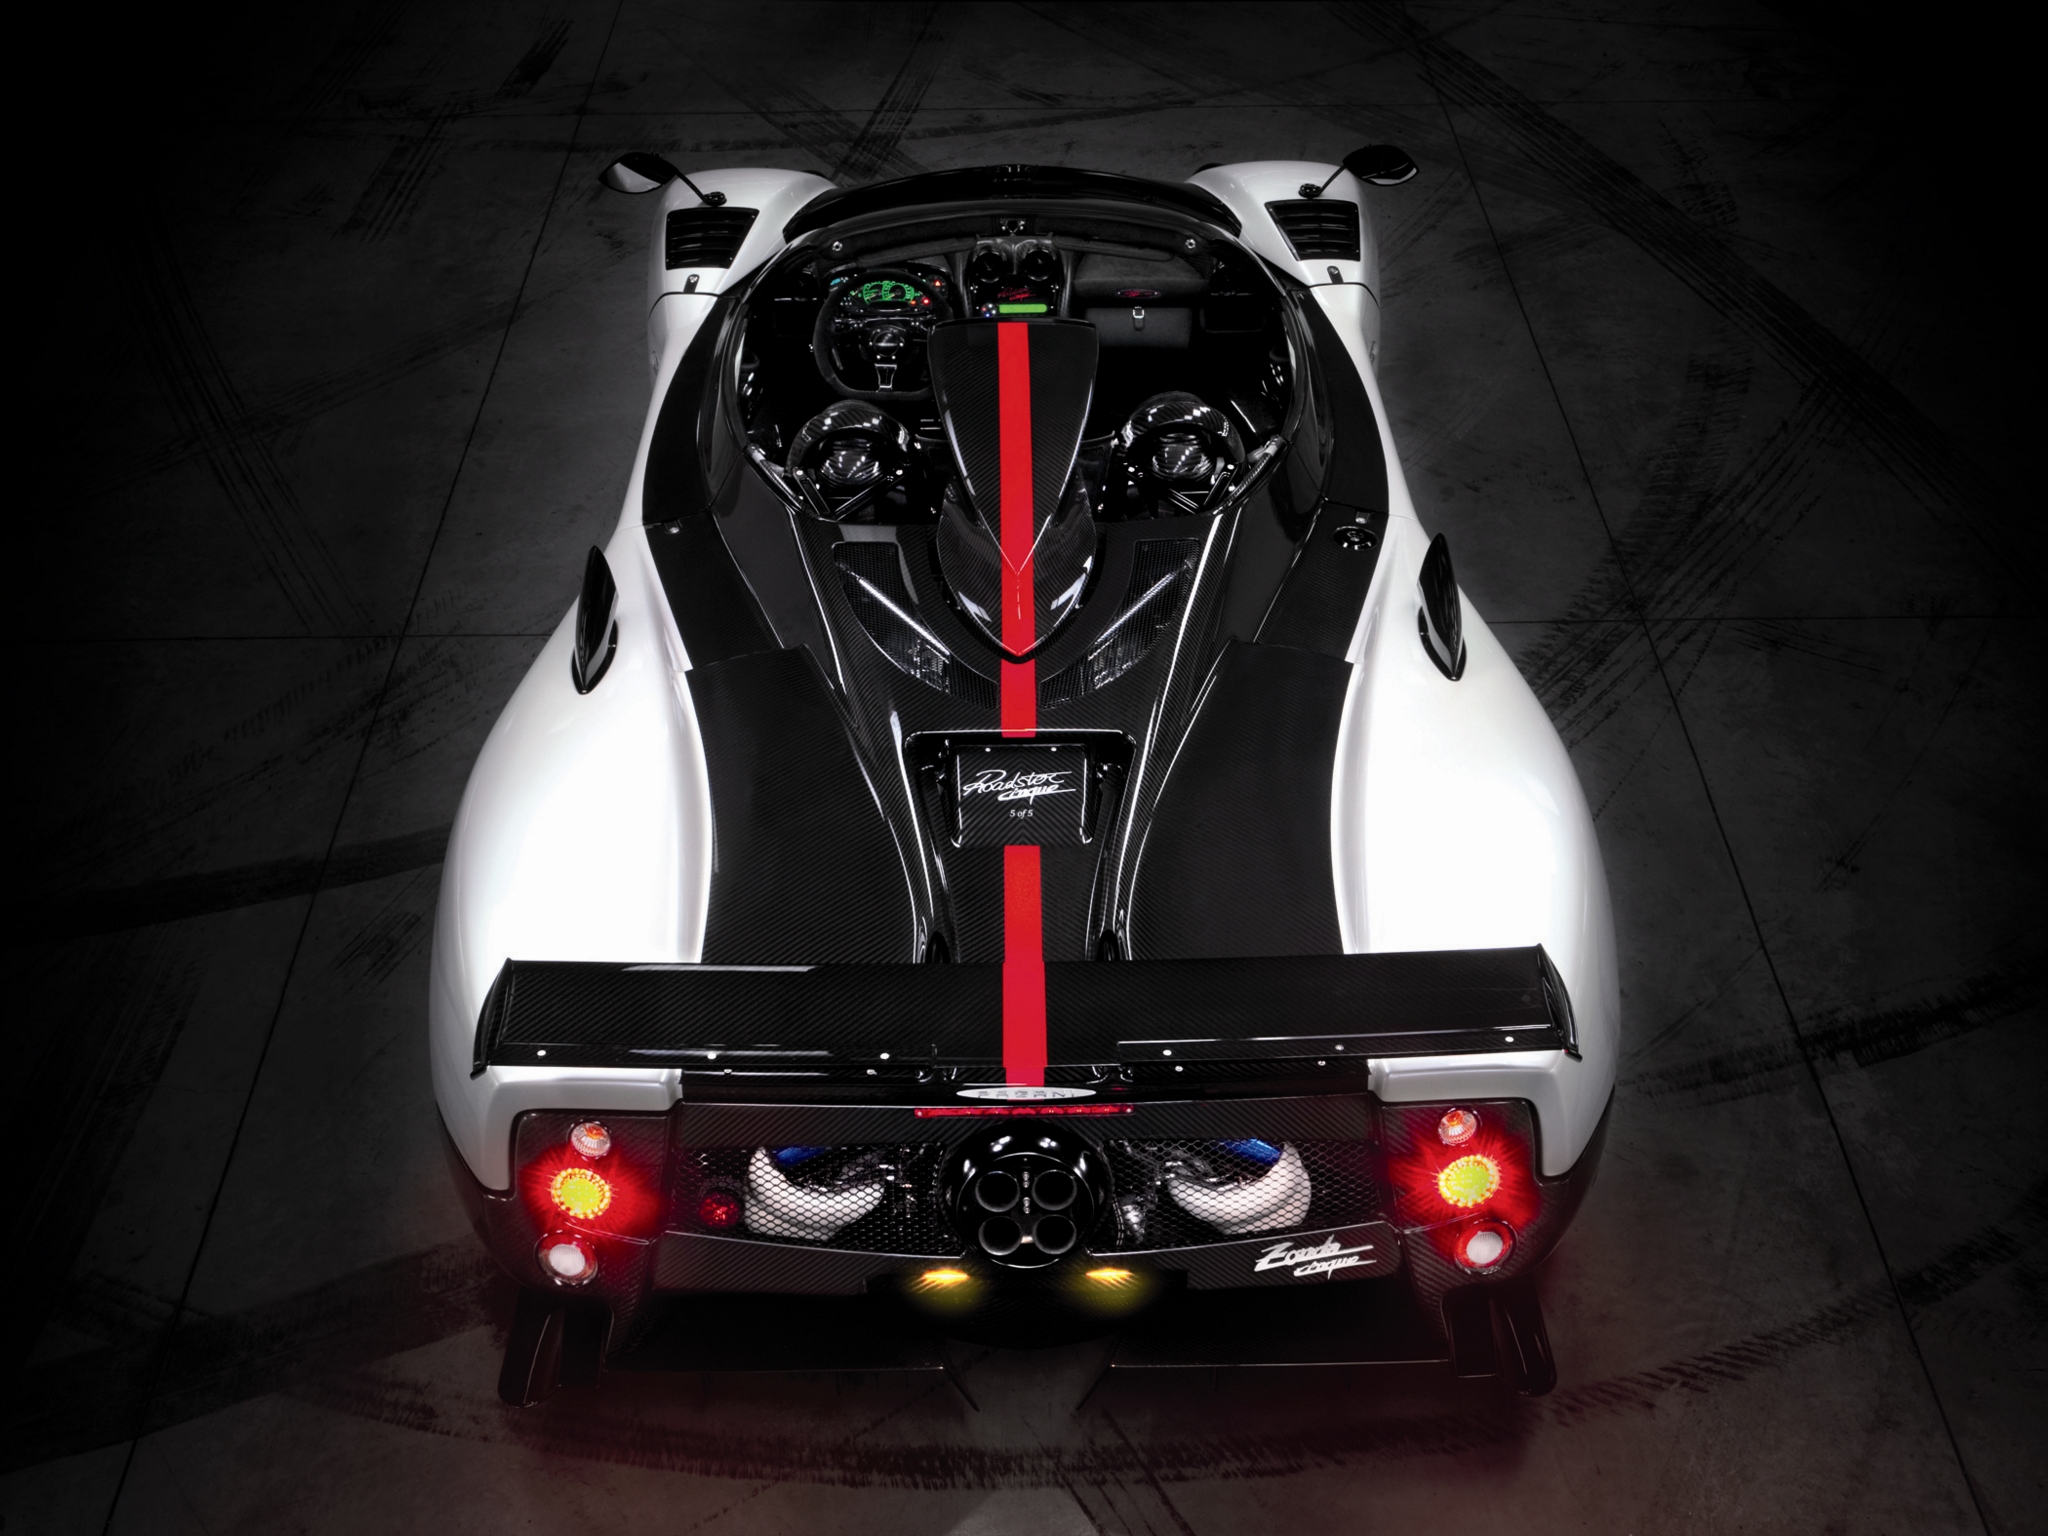 Forza Horizon 5: 2009 Pagani Zonda Cinque Roadster